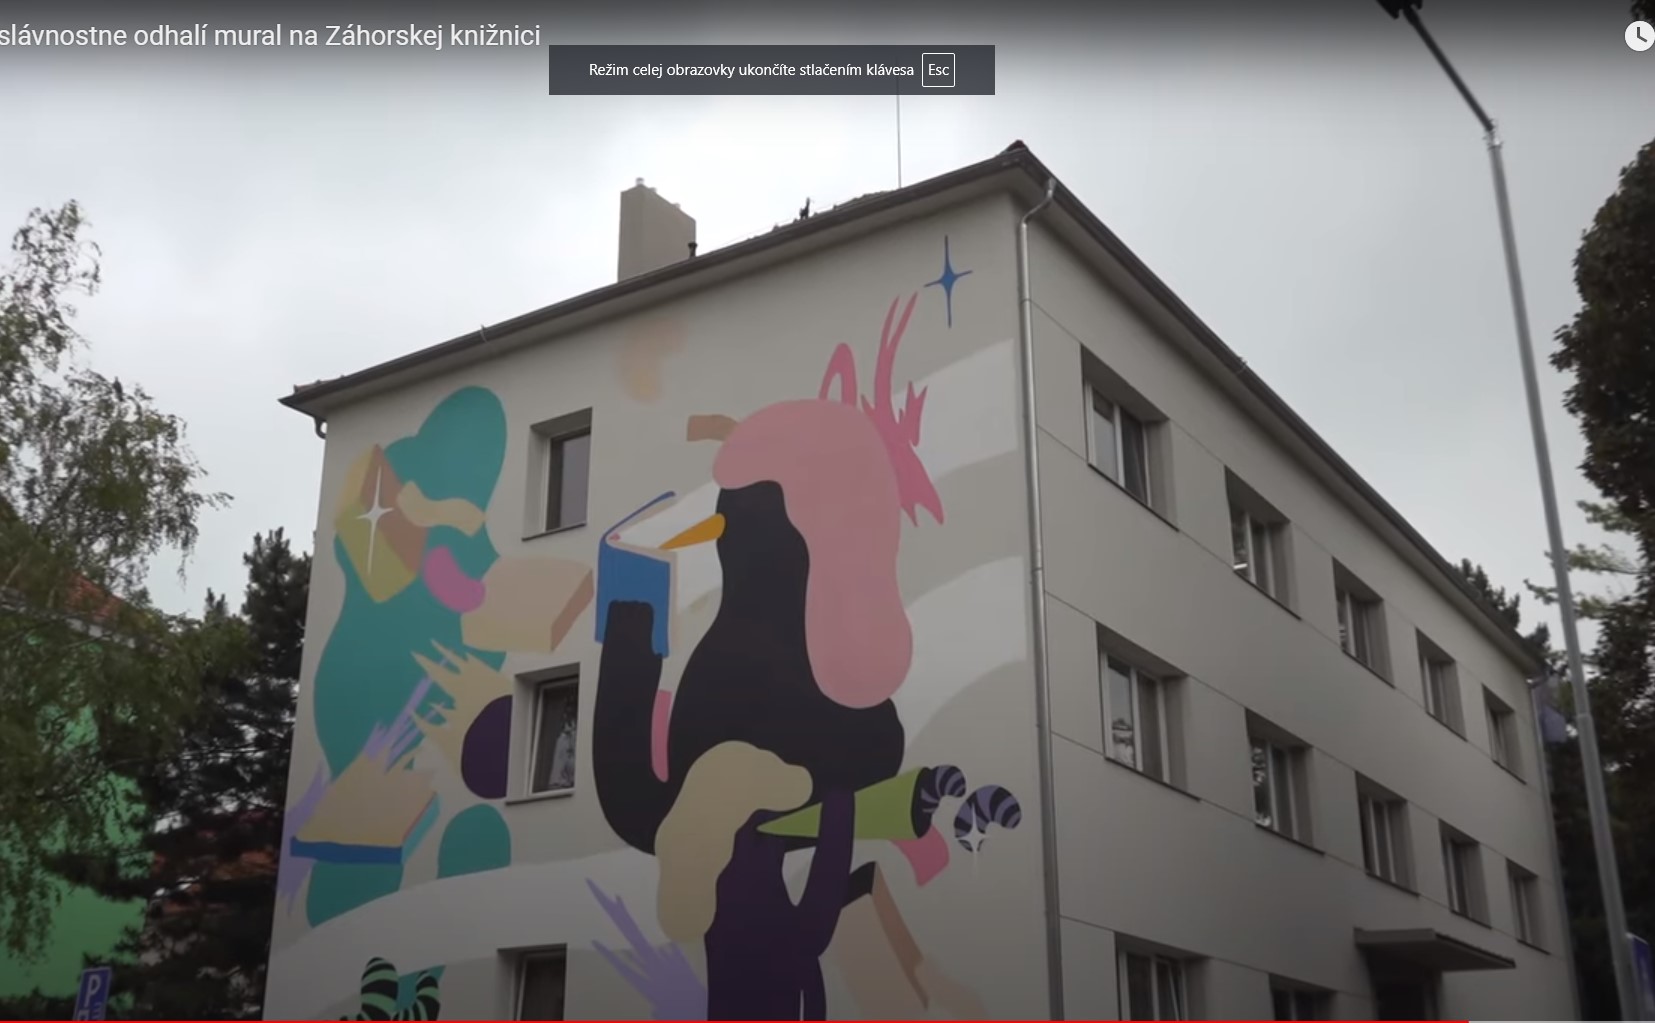 Laserová šou slávnostne odhalí mural na Záhorskej knižnici